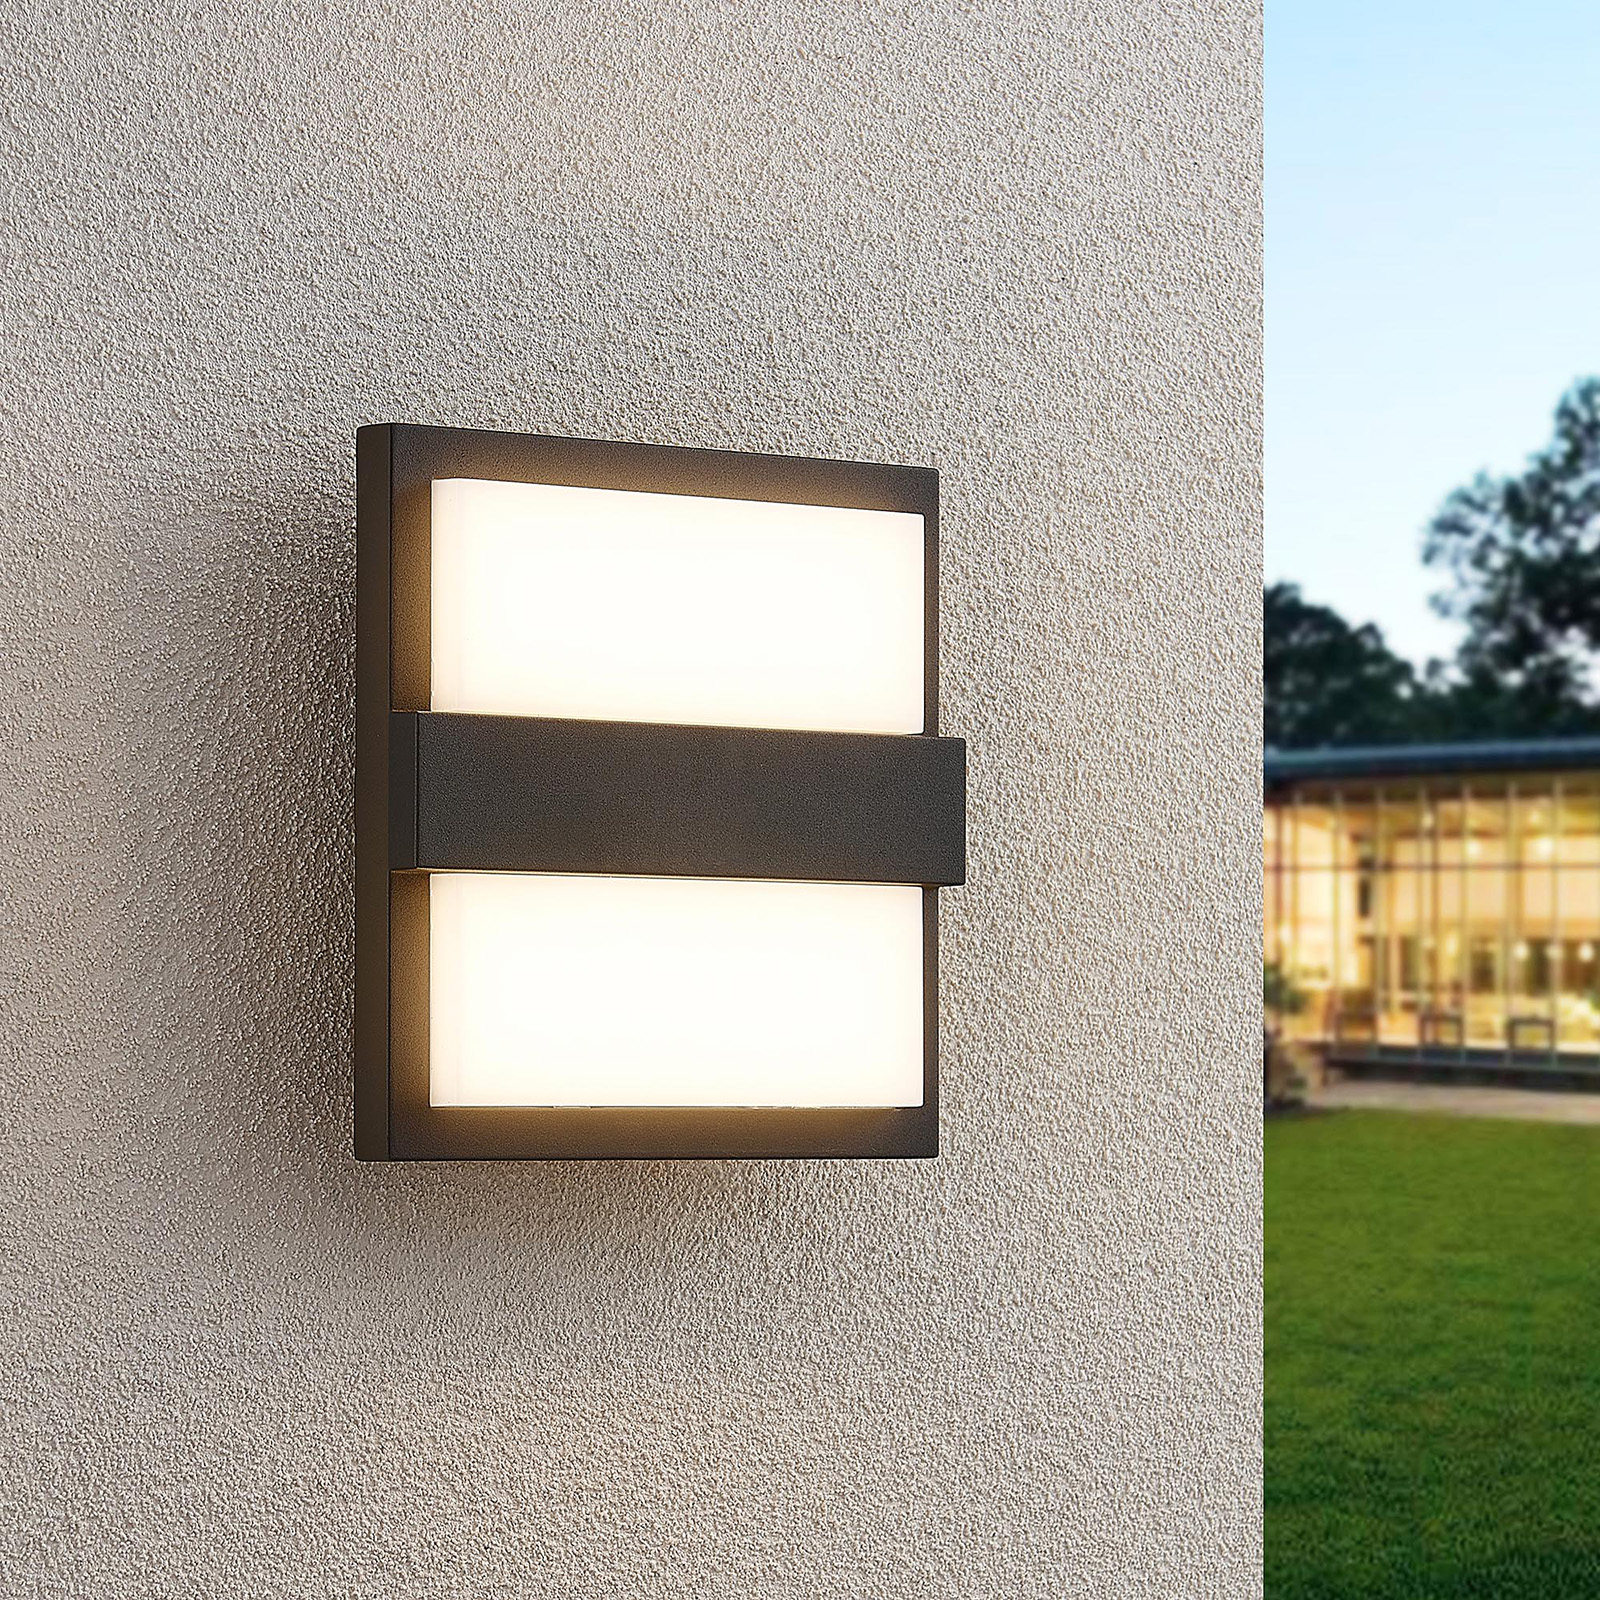 Lucande Gylfi LED-væglampe, kvadratisk